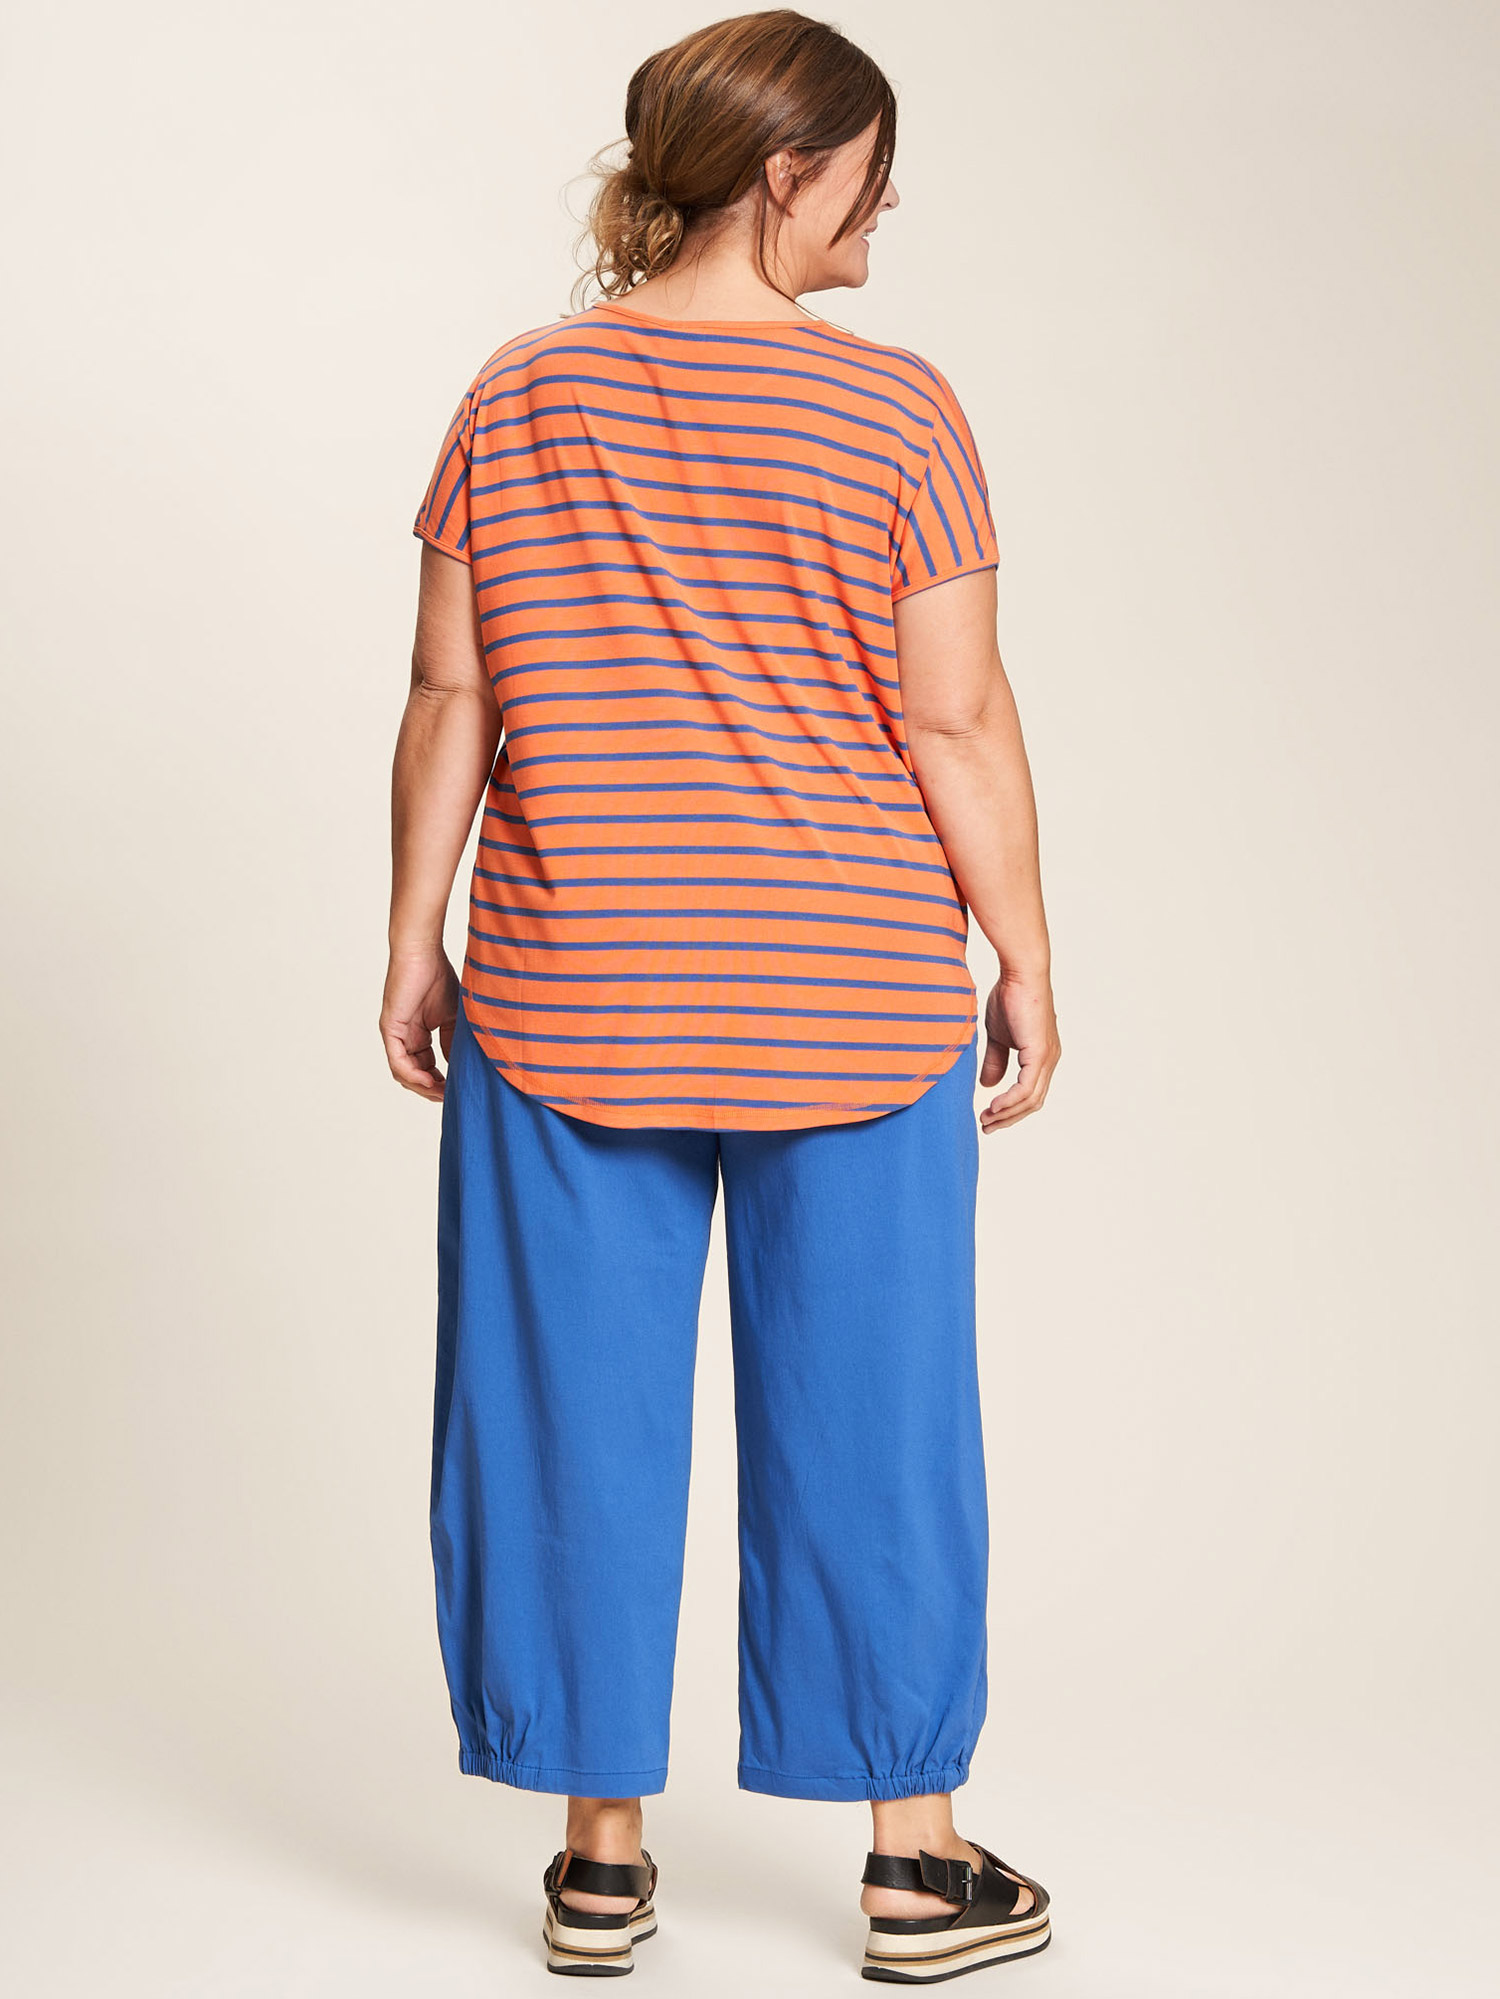 Gitte - Orange jersey t-skjorte med blå striper fra Gozzip